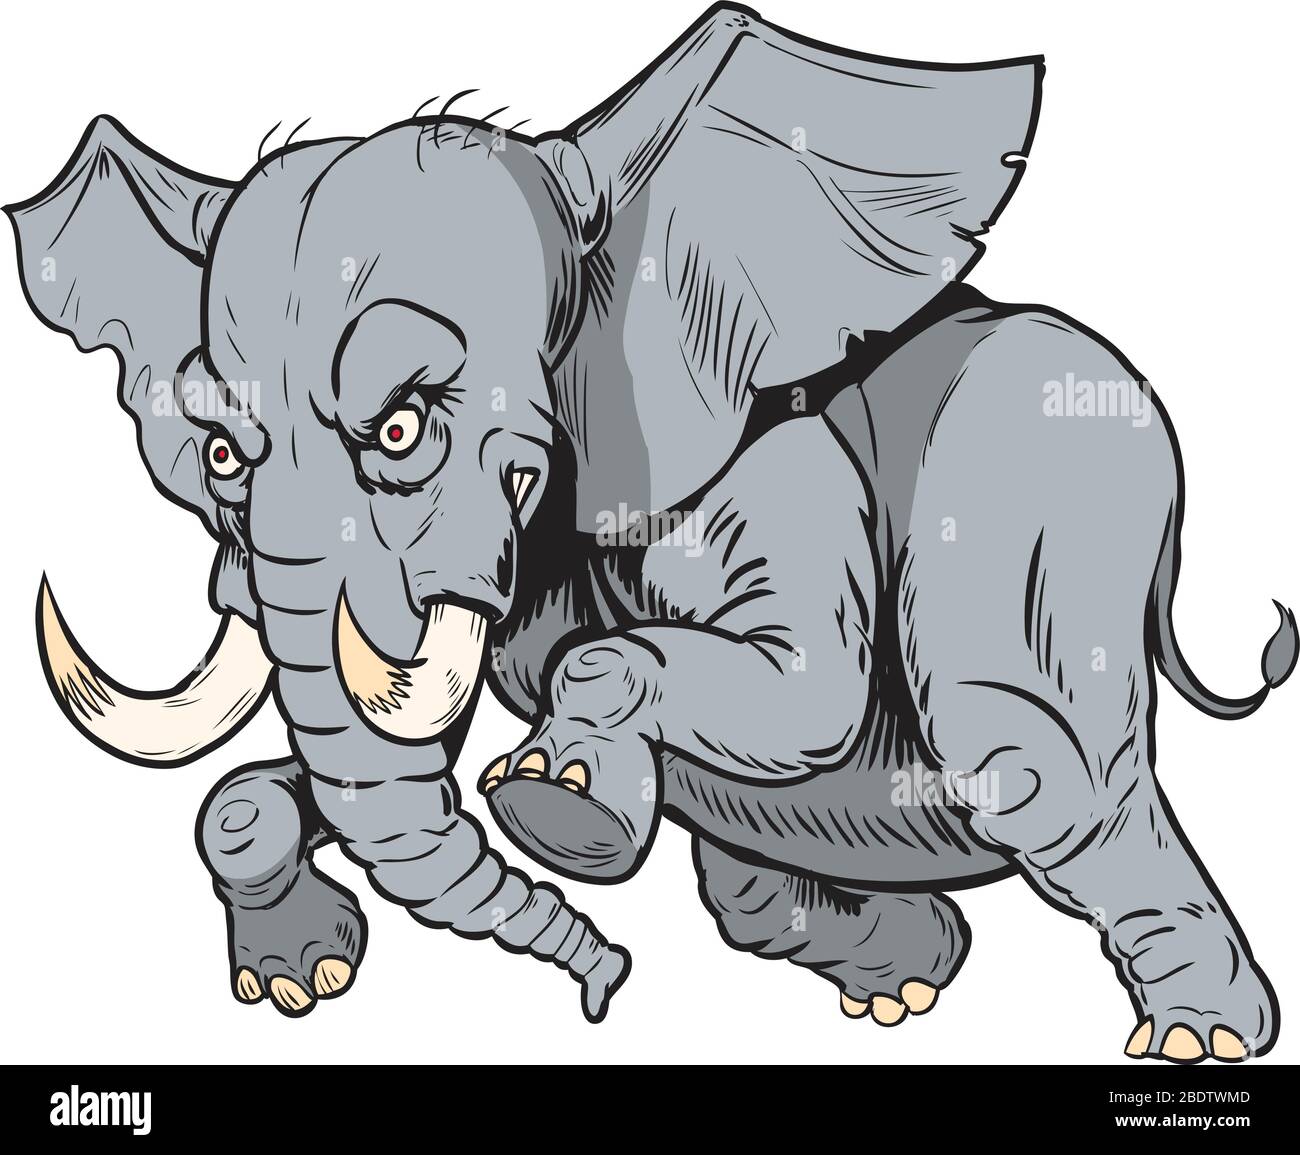 Vektor Cartoon Clip Art Illustration eines aufladende wütend afrikanischen Elefanten Maskottchen in separaten Schichten. Stock Vektor